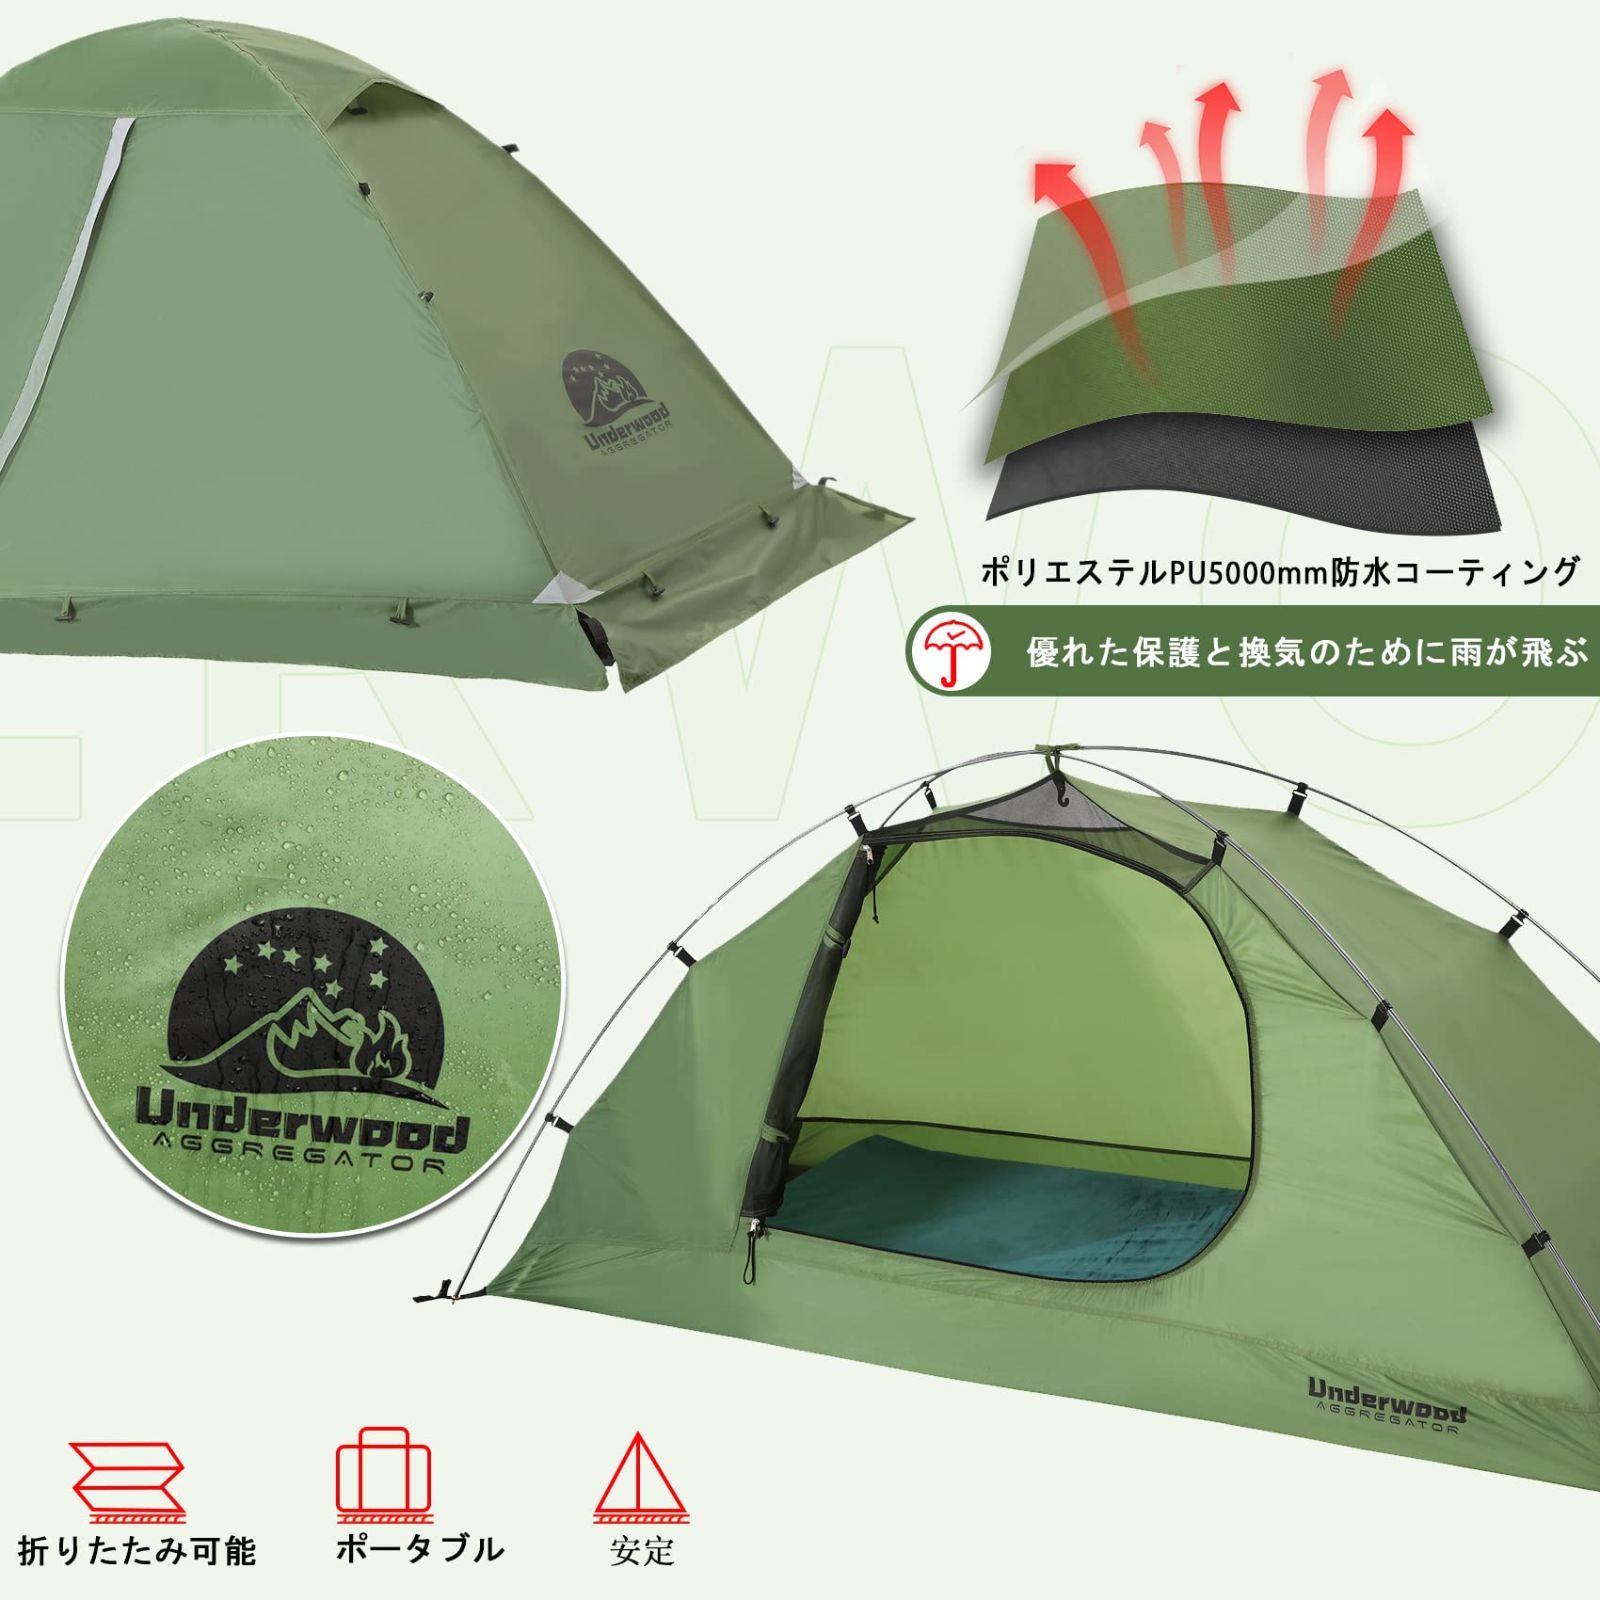 ワンタッチテント 2~4人用テント 軽量 持ち運び便利 アウトドア 